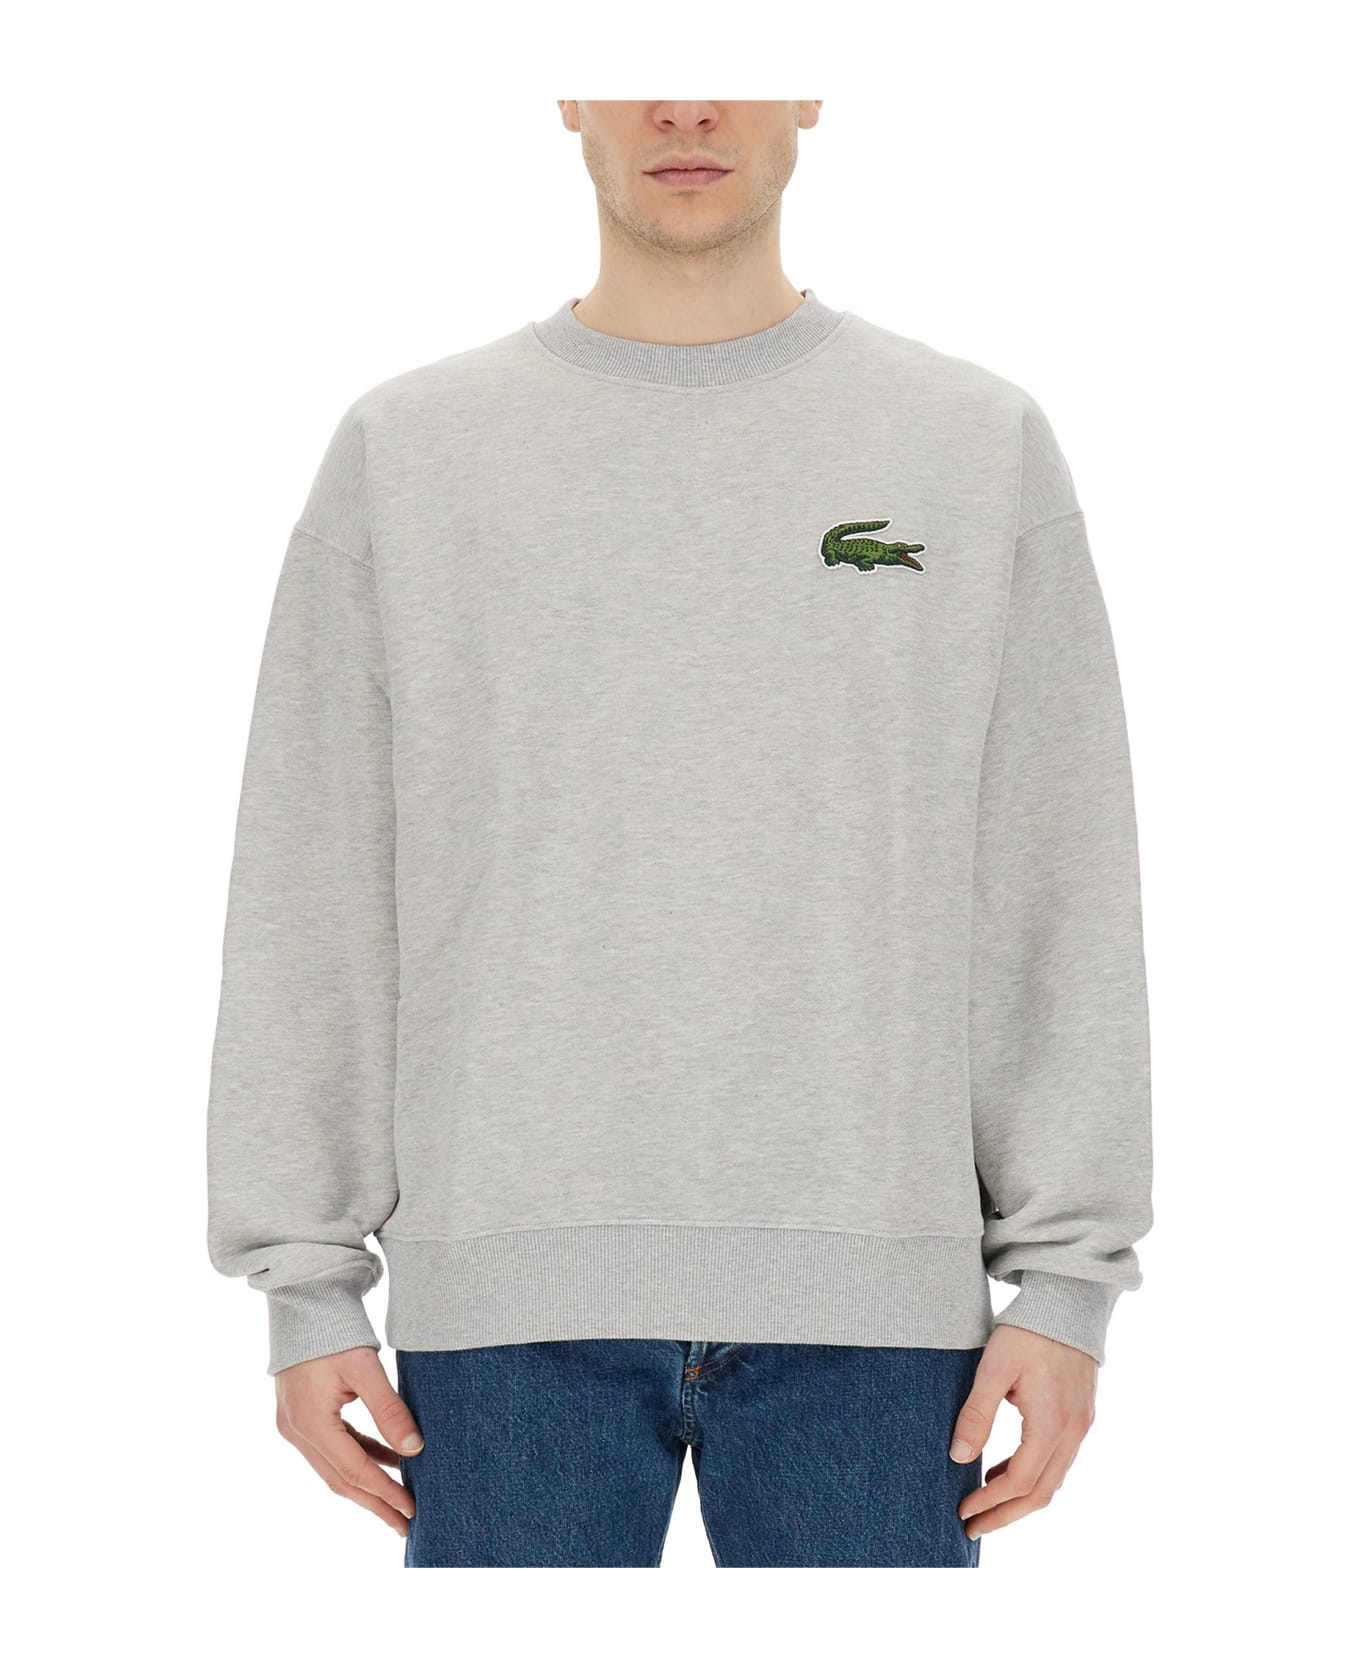 Lacoste Sweatshirt With Logo - Grey